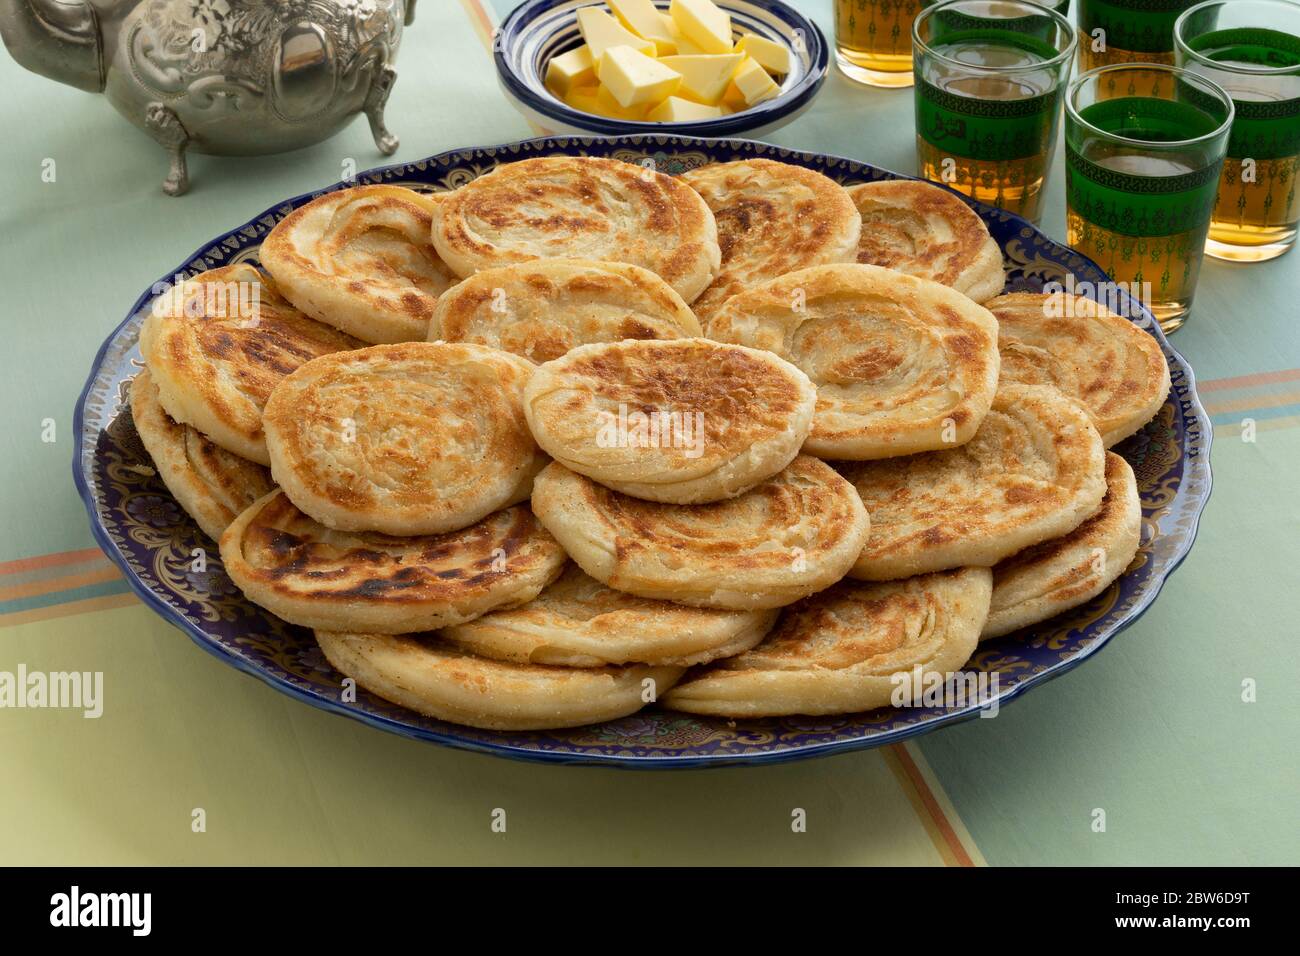 Homemage Meloui frais, crêpes marocaines sur une assiette avec beurre et thé pour Eid al-Fitr Banque D'Images